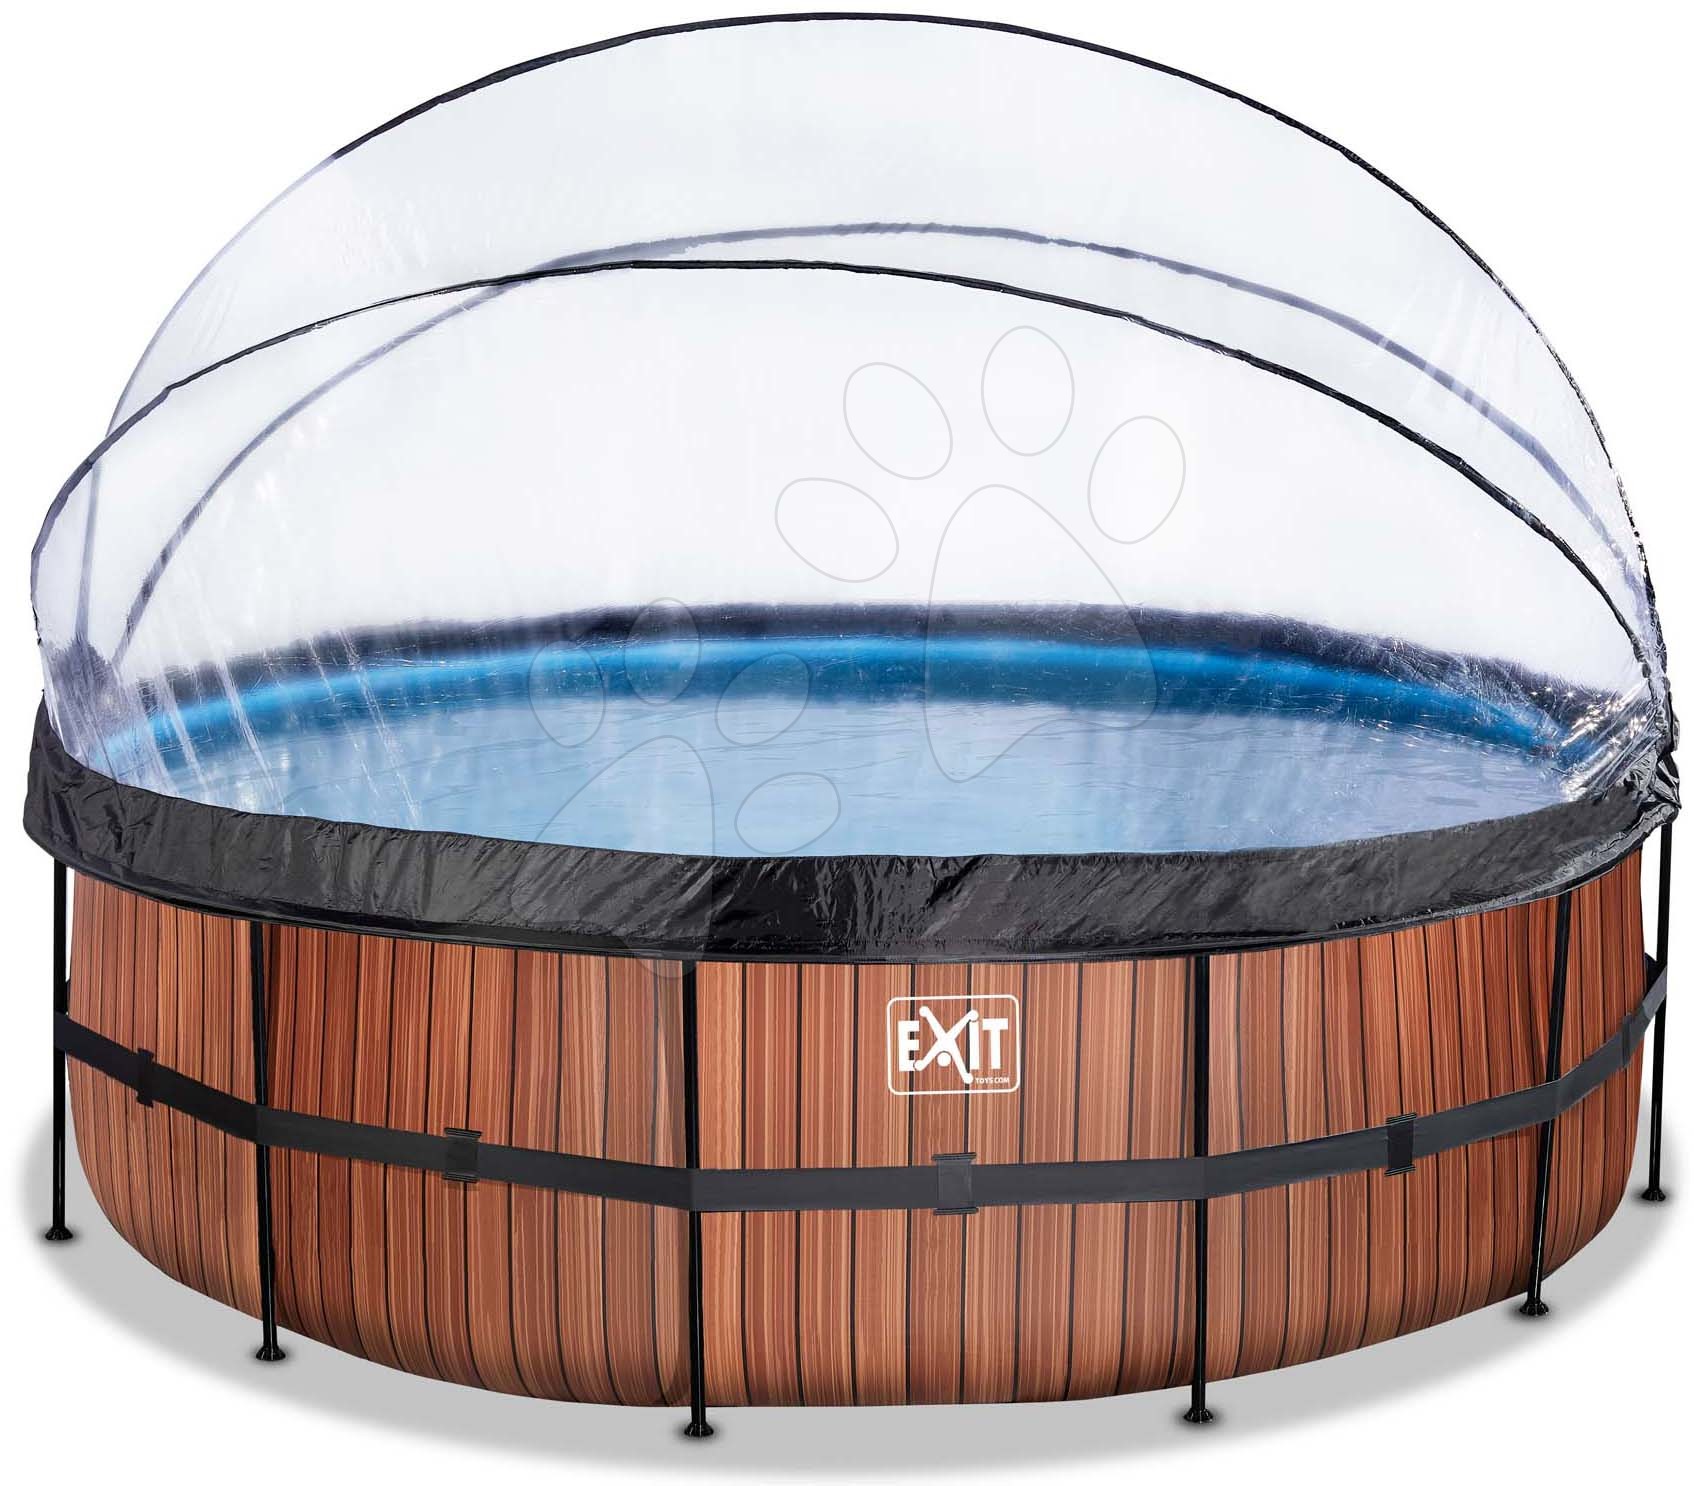 Bazén s krytem a pískovou filtrací Wood pool Exit Toys kruhový ocelová konstrukce 450*122 cm hnědý od 6 let